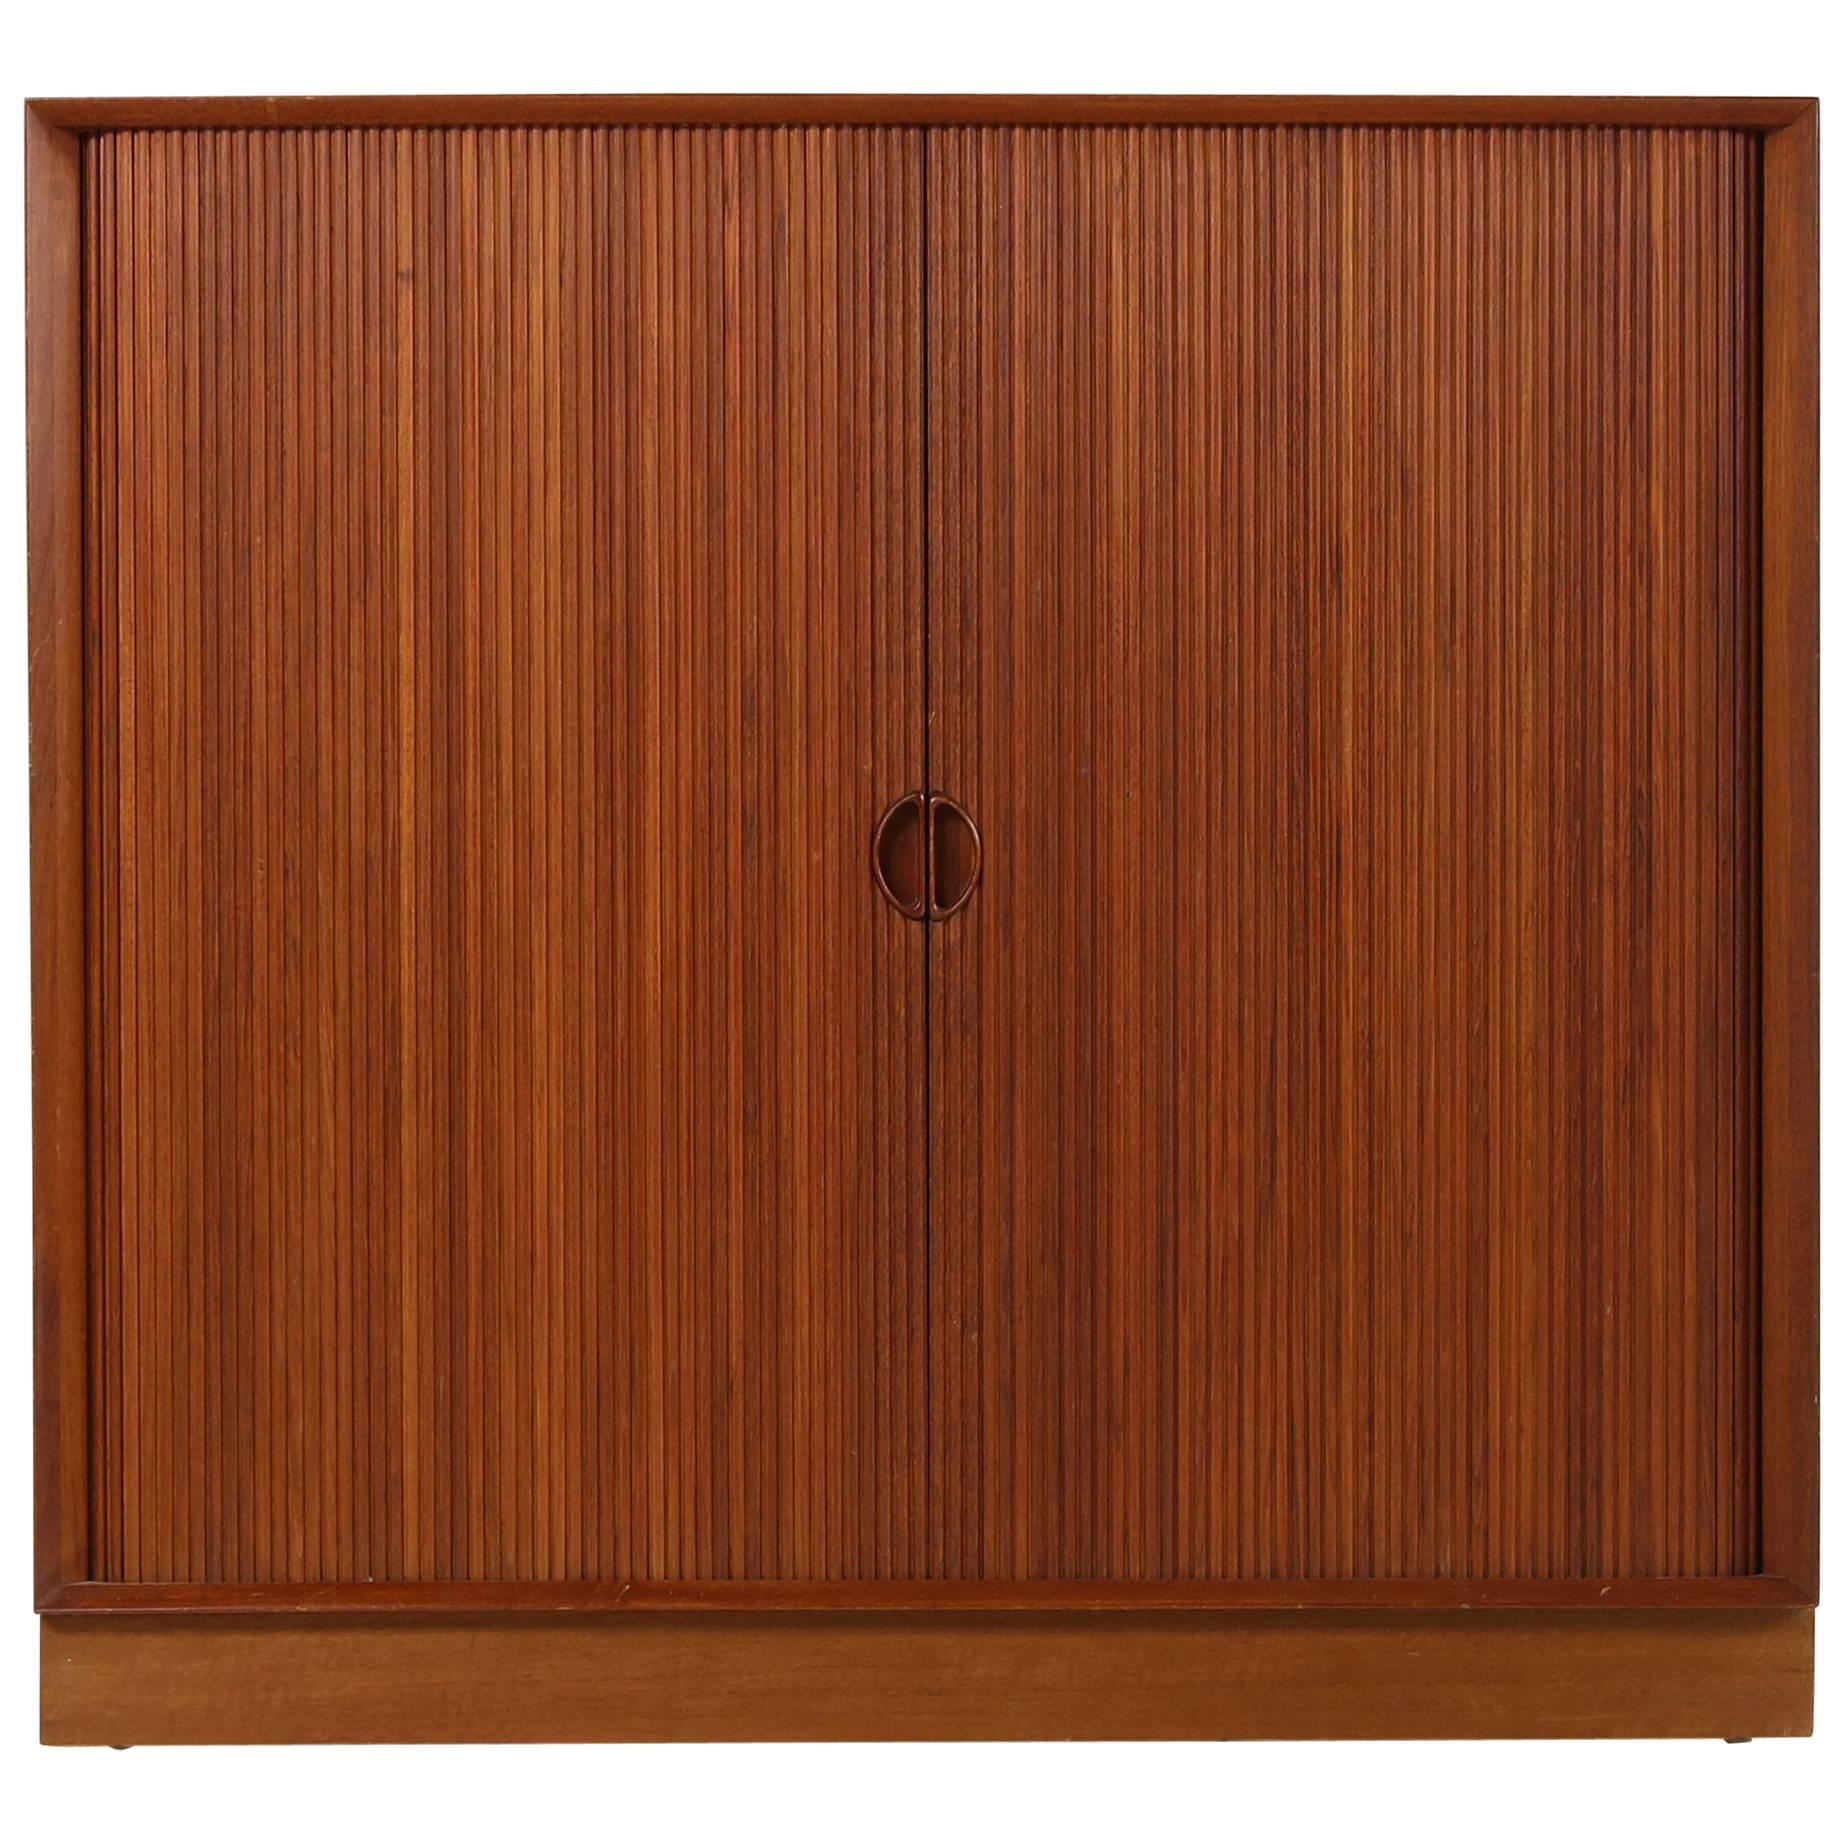 1960s Peter Hvidt Teak Cabinet with Tambour Doors Danish Modern Design Sideboard